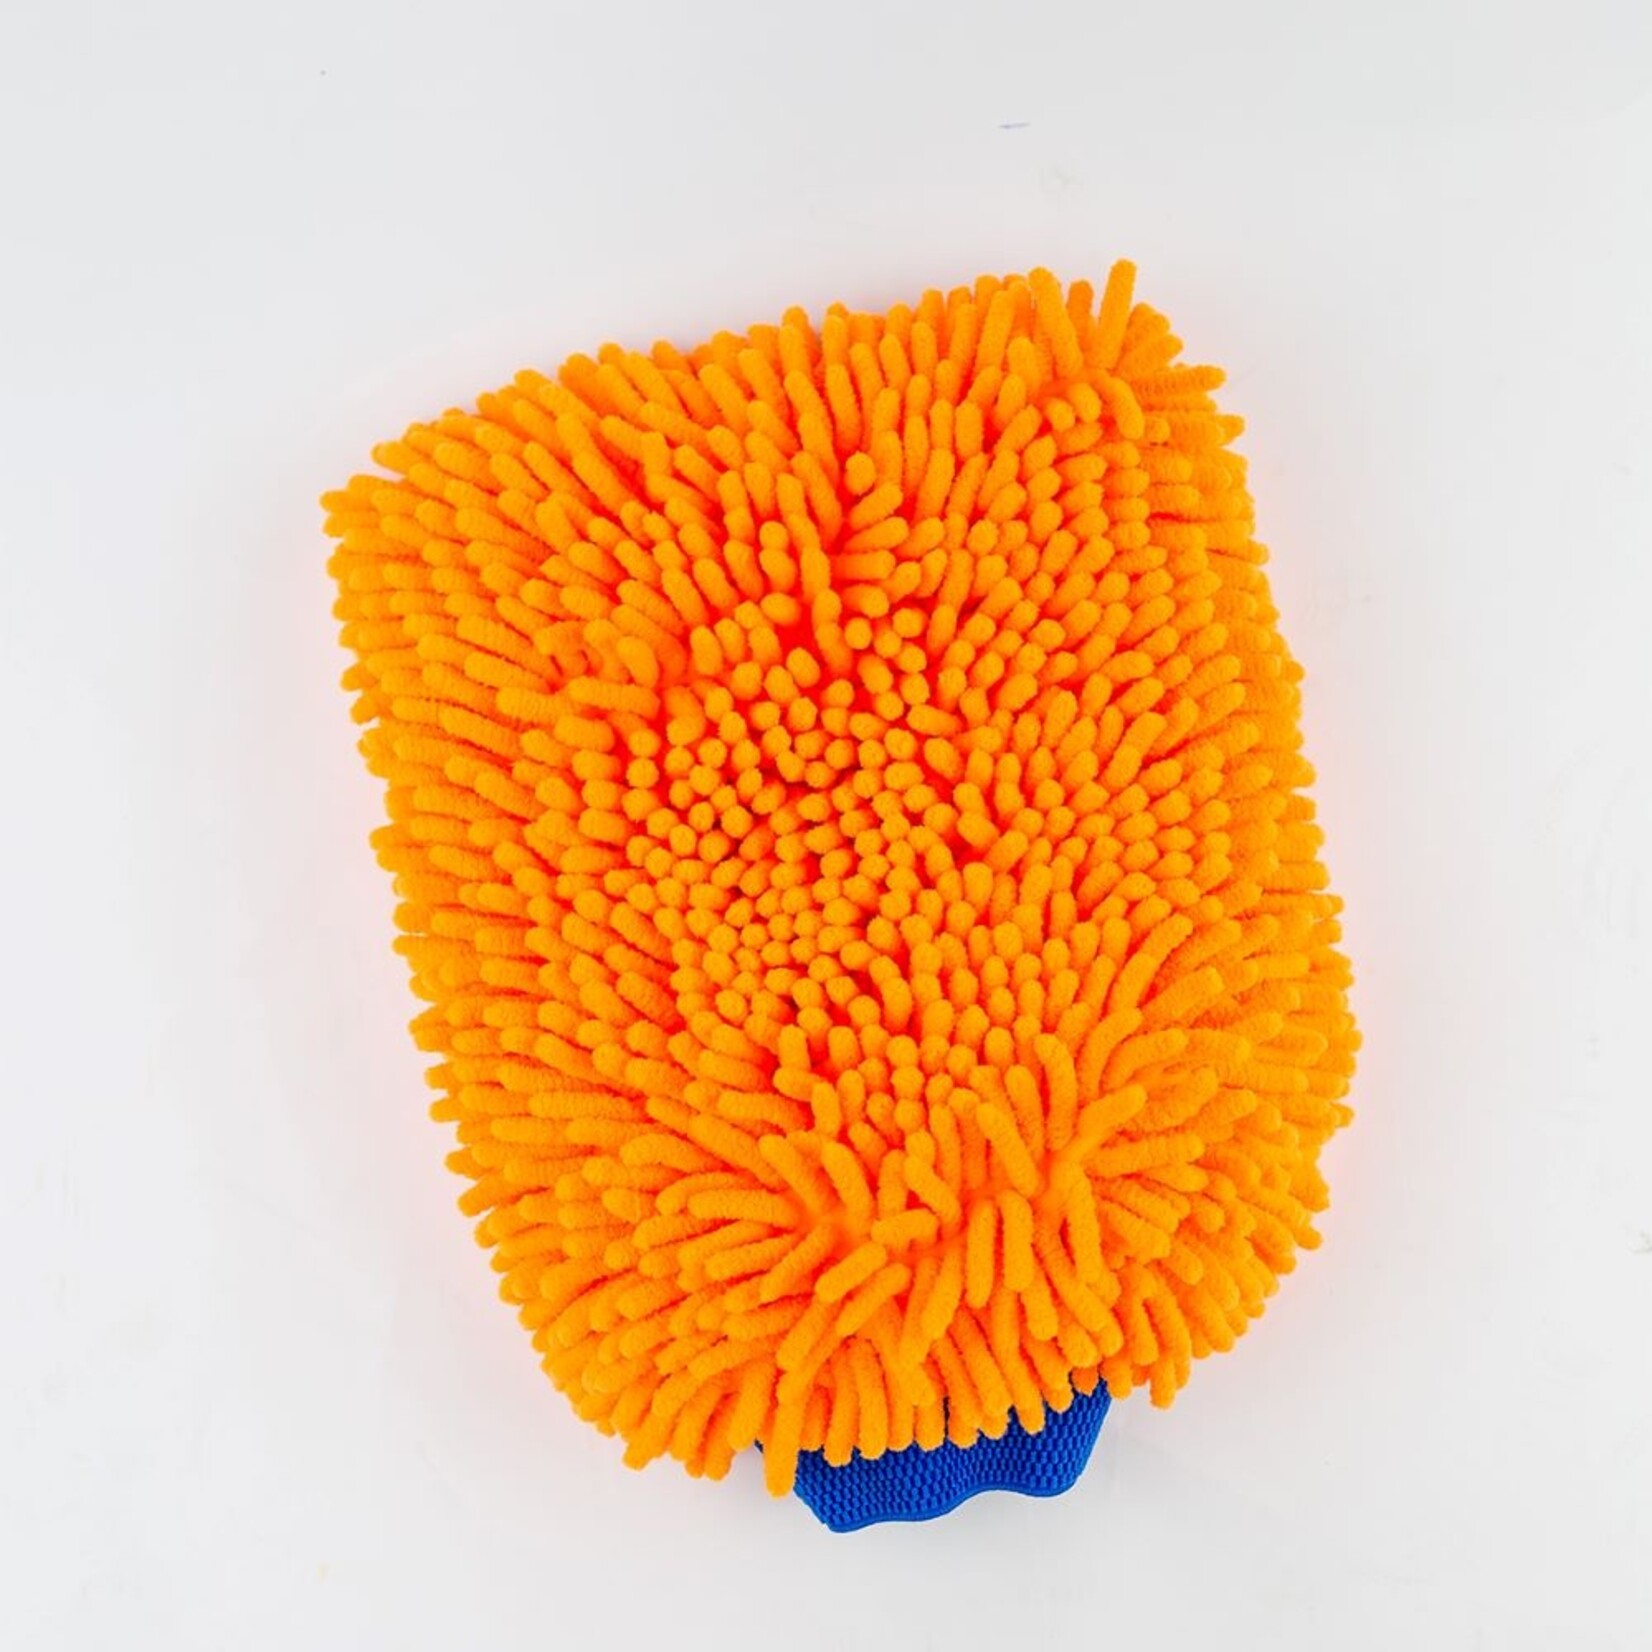 Deckmate Microfiber Washandschoen - Oranje